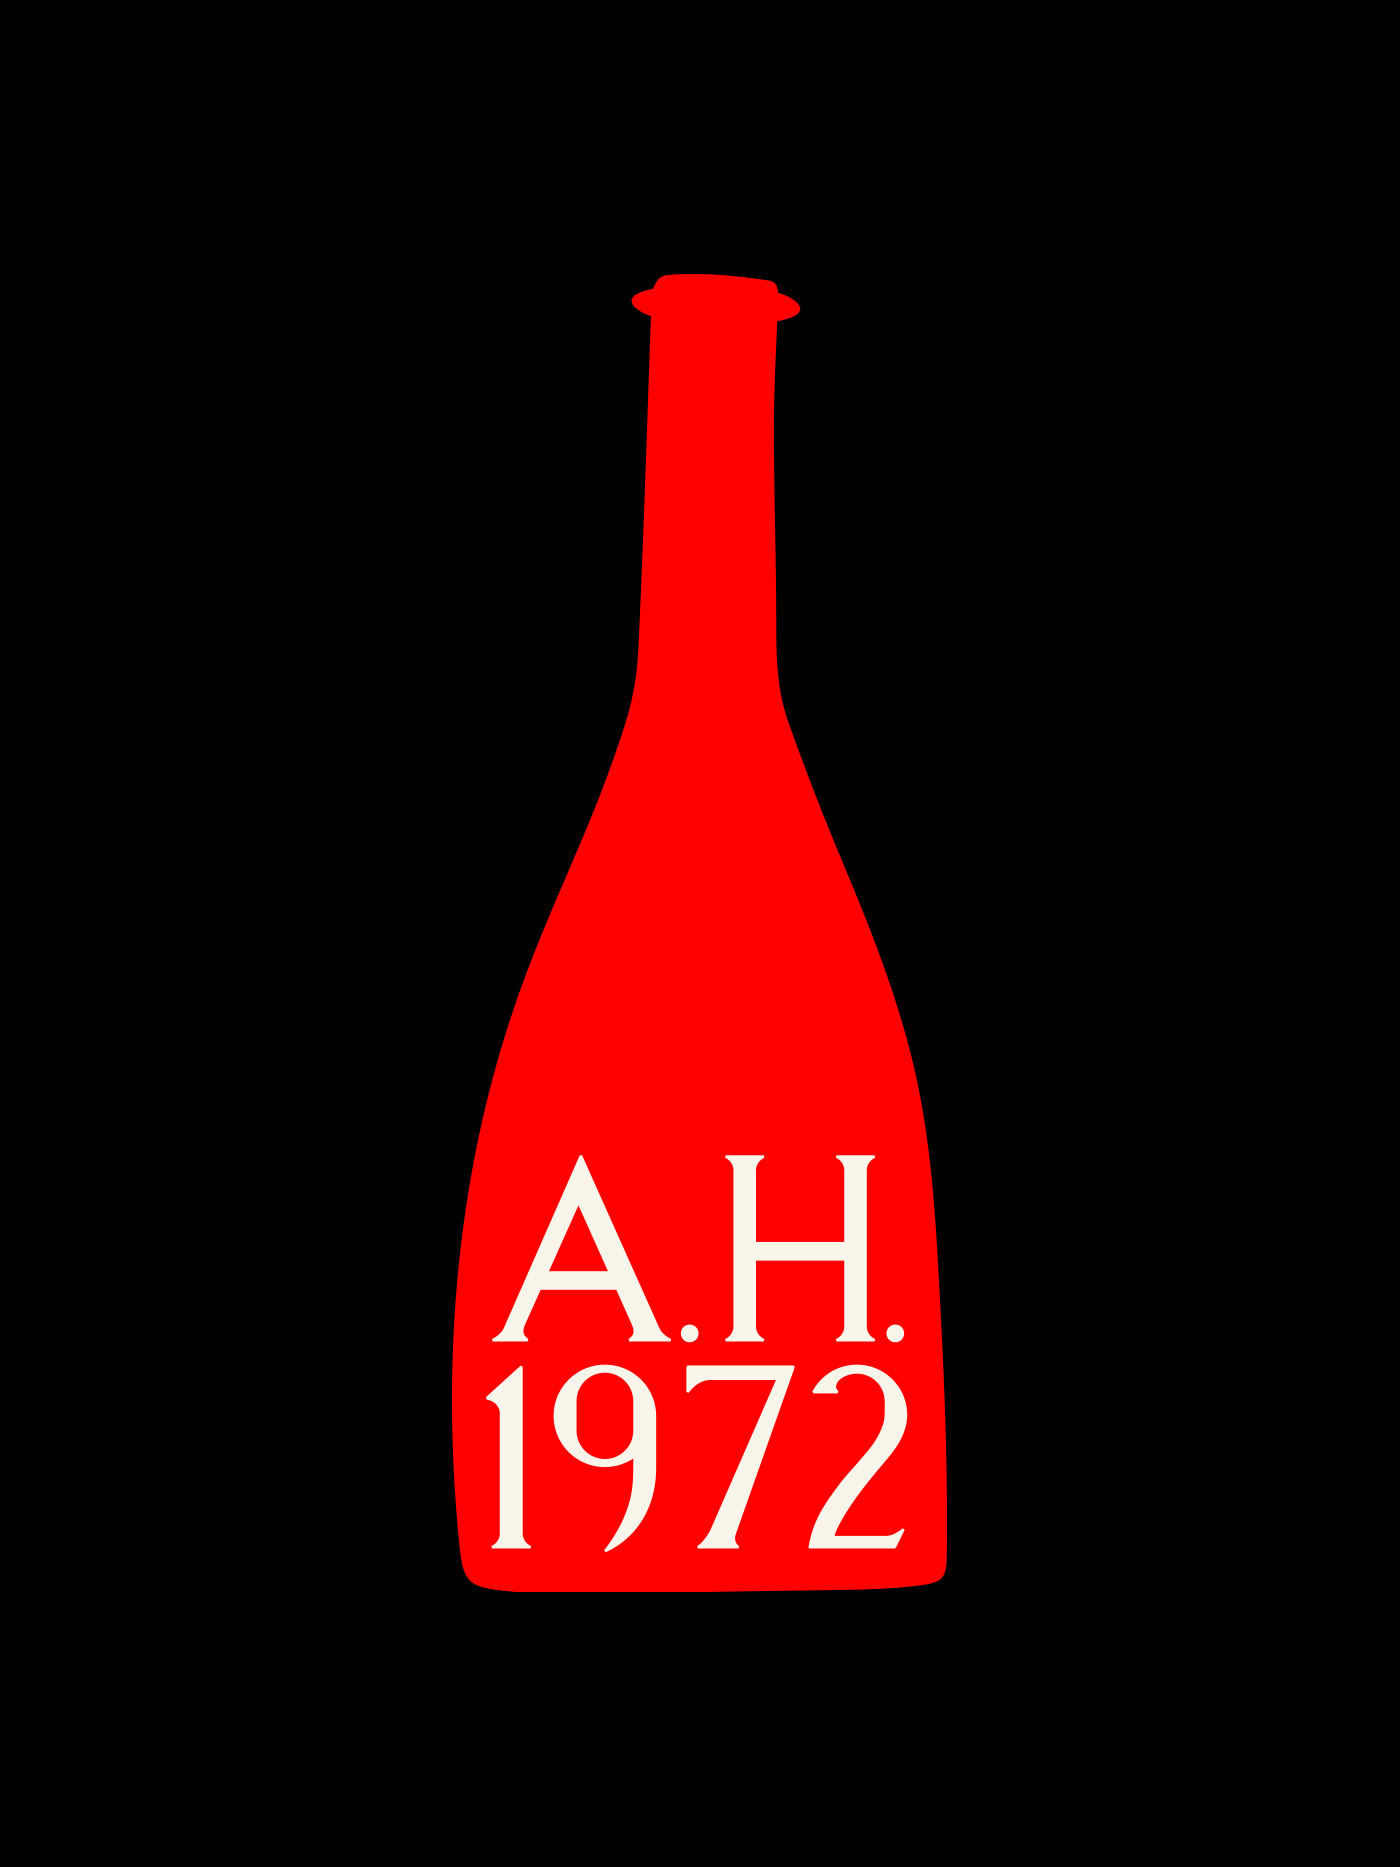 Studio-Hrastar-AH-1972-Bottle-Illustration-2